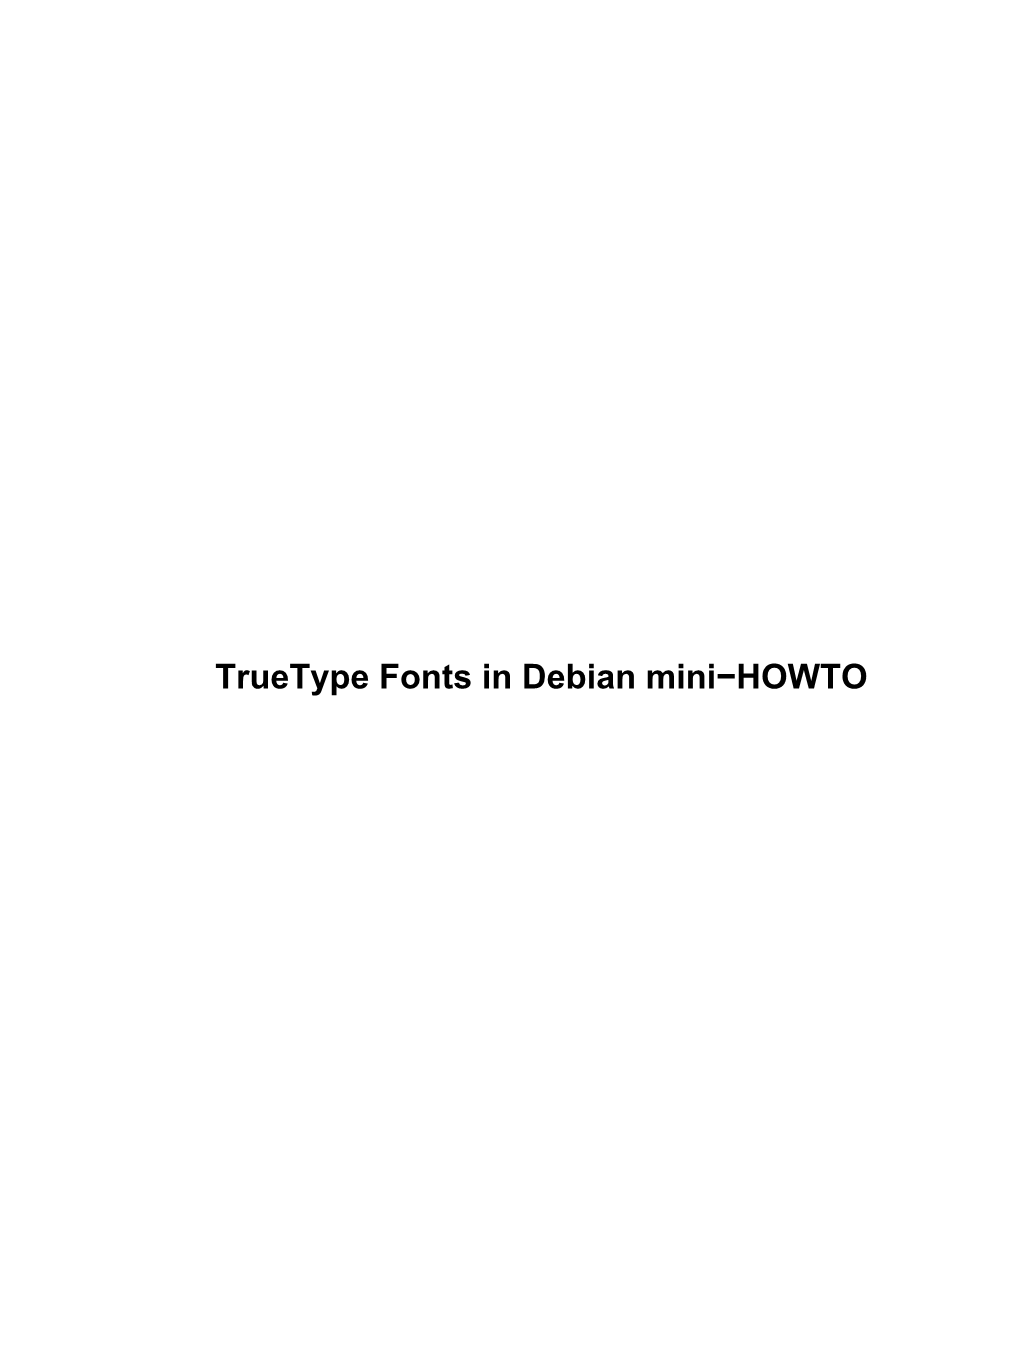 Truetype Fonts in Debian Mini-HOWTO